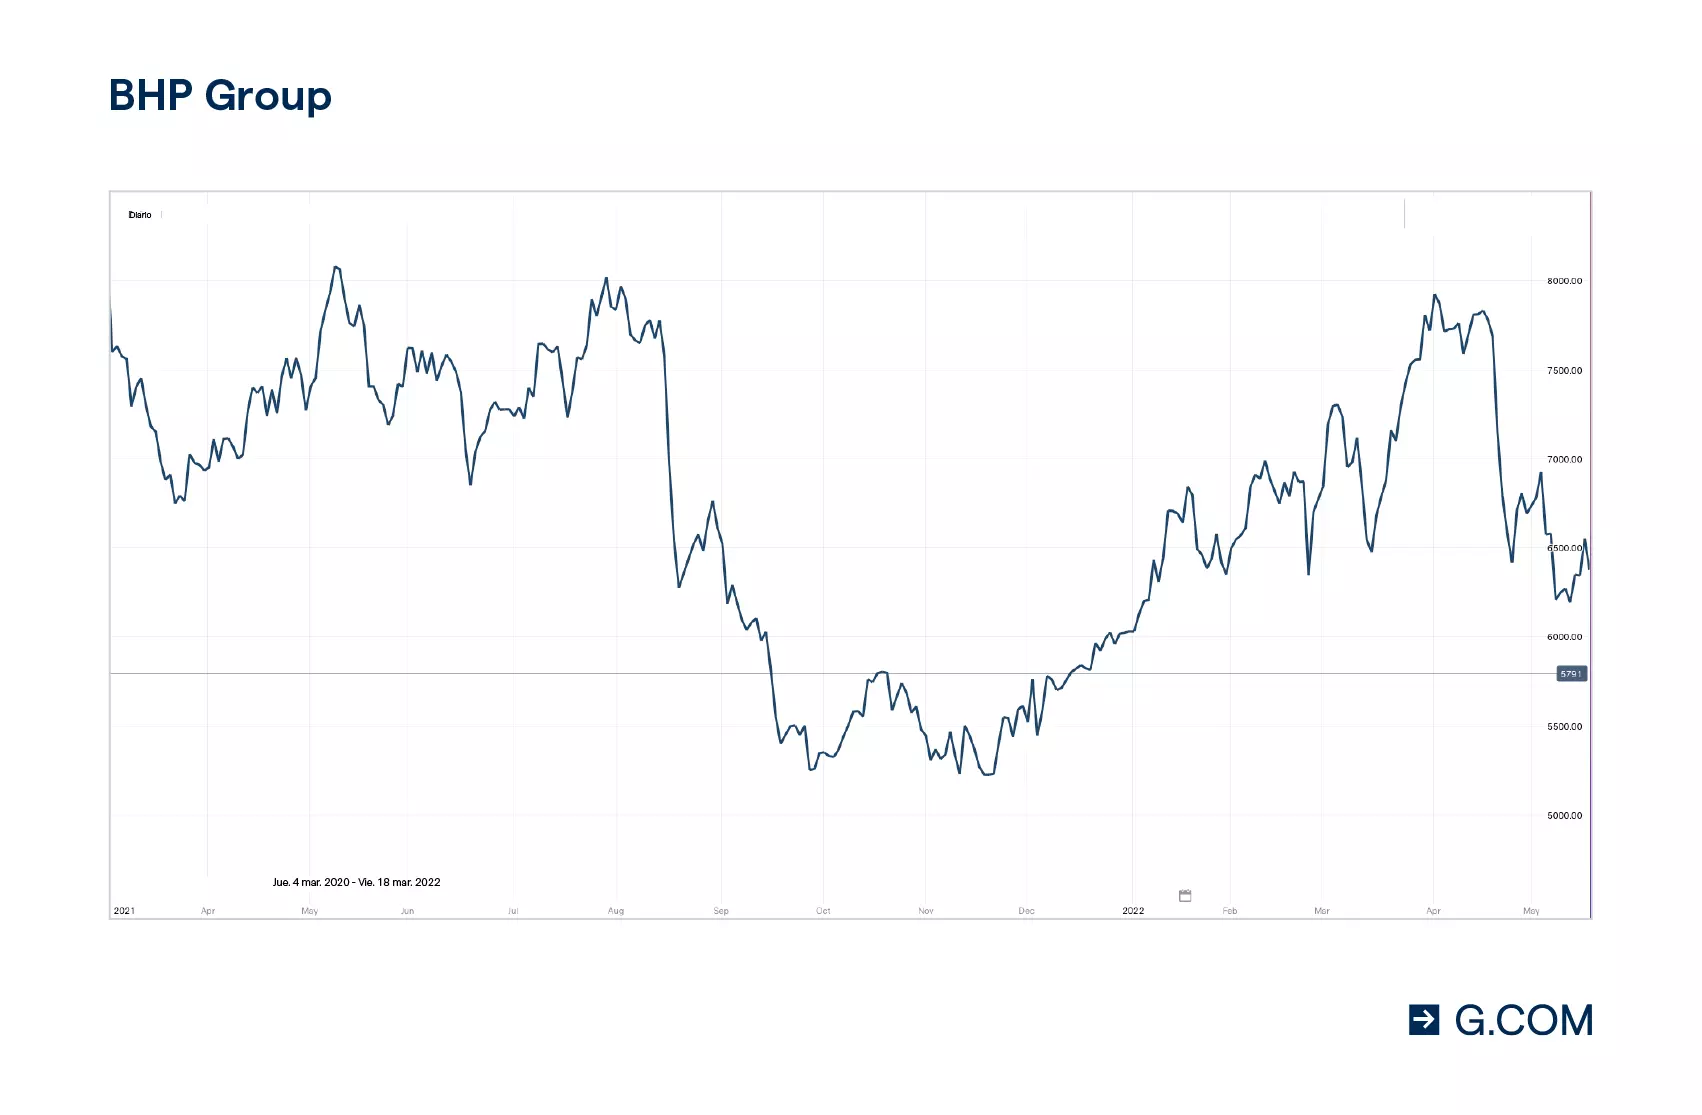 Gráfico del movimiento de precio de la acción de BHP Billiton en los últimos 12 meses